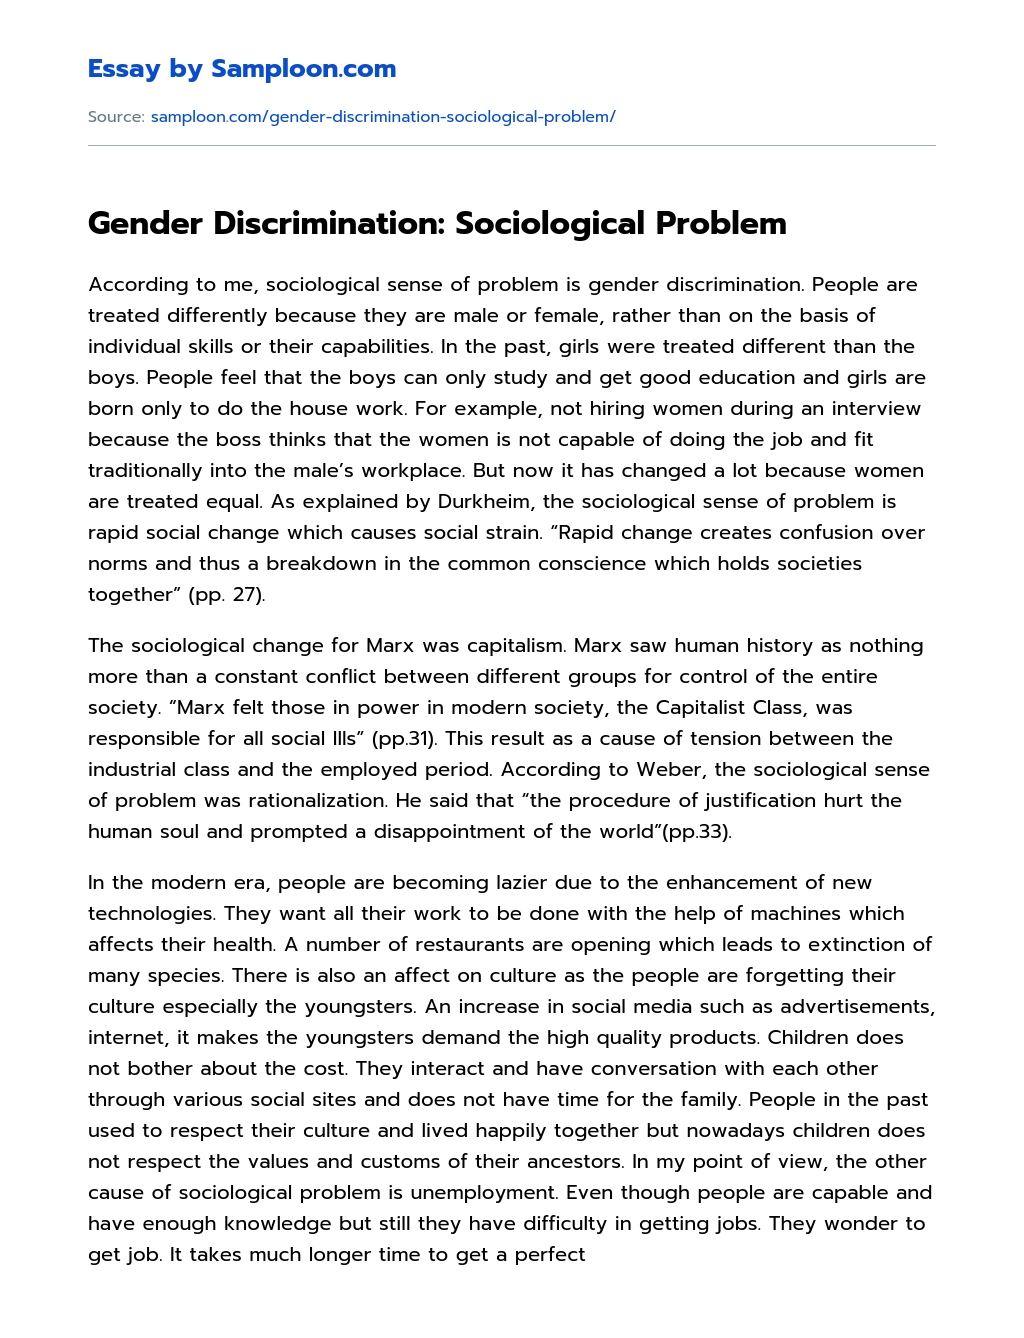 Gender Discrimination: Sociological Problem essay